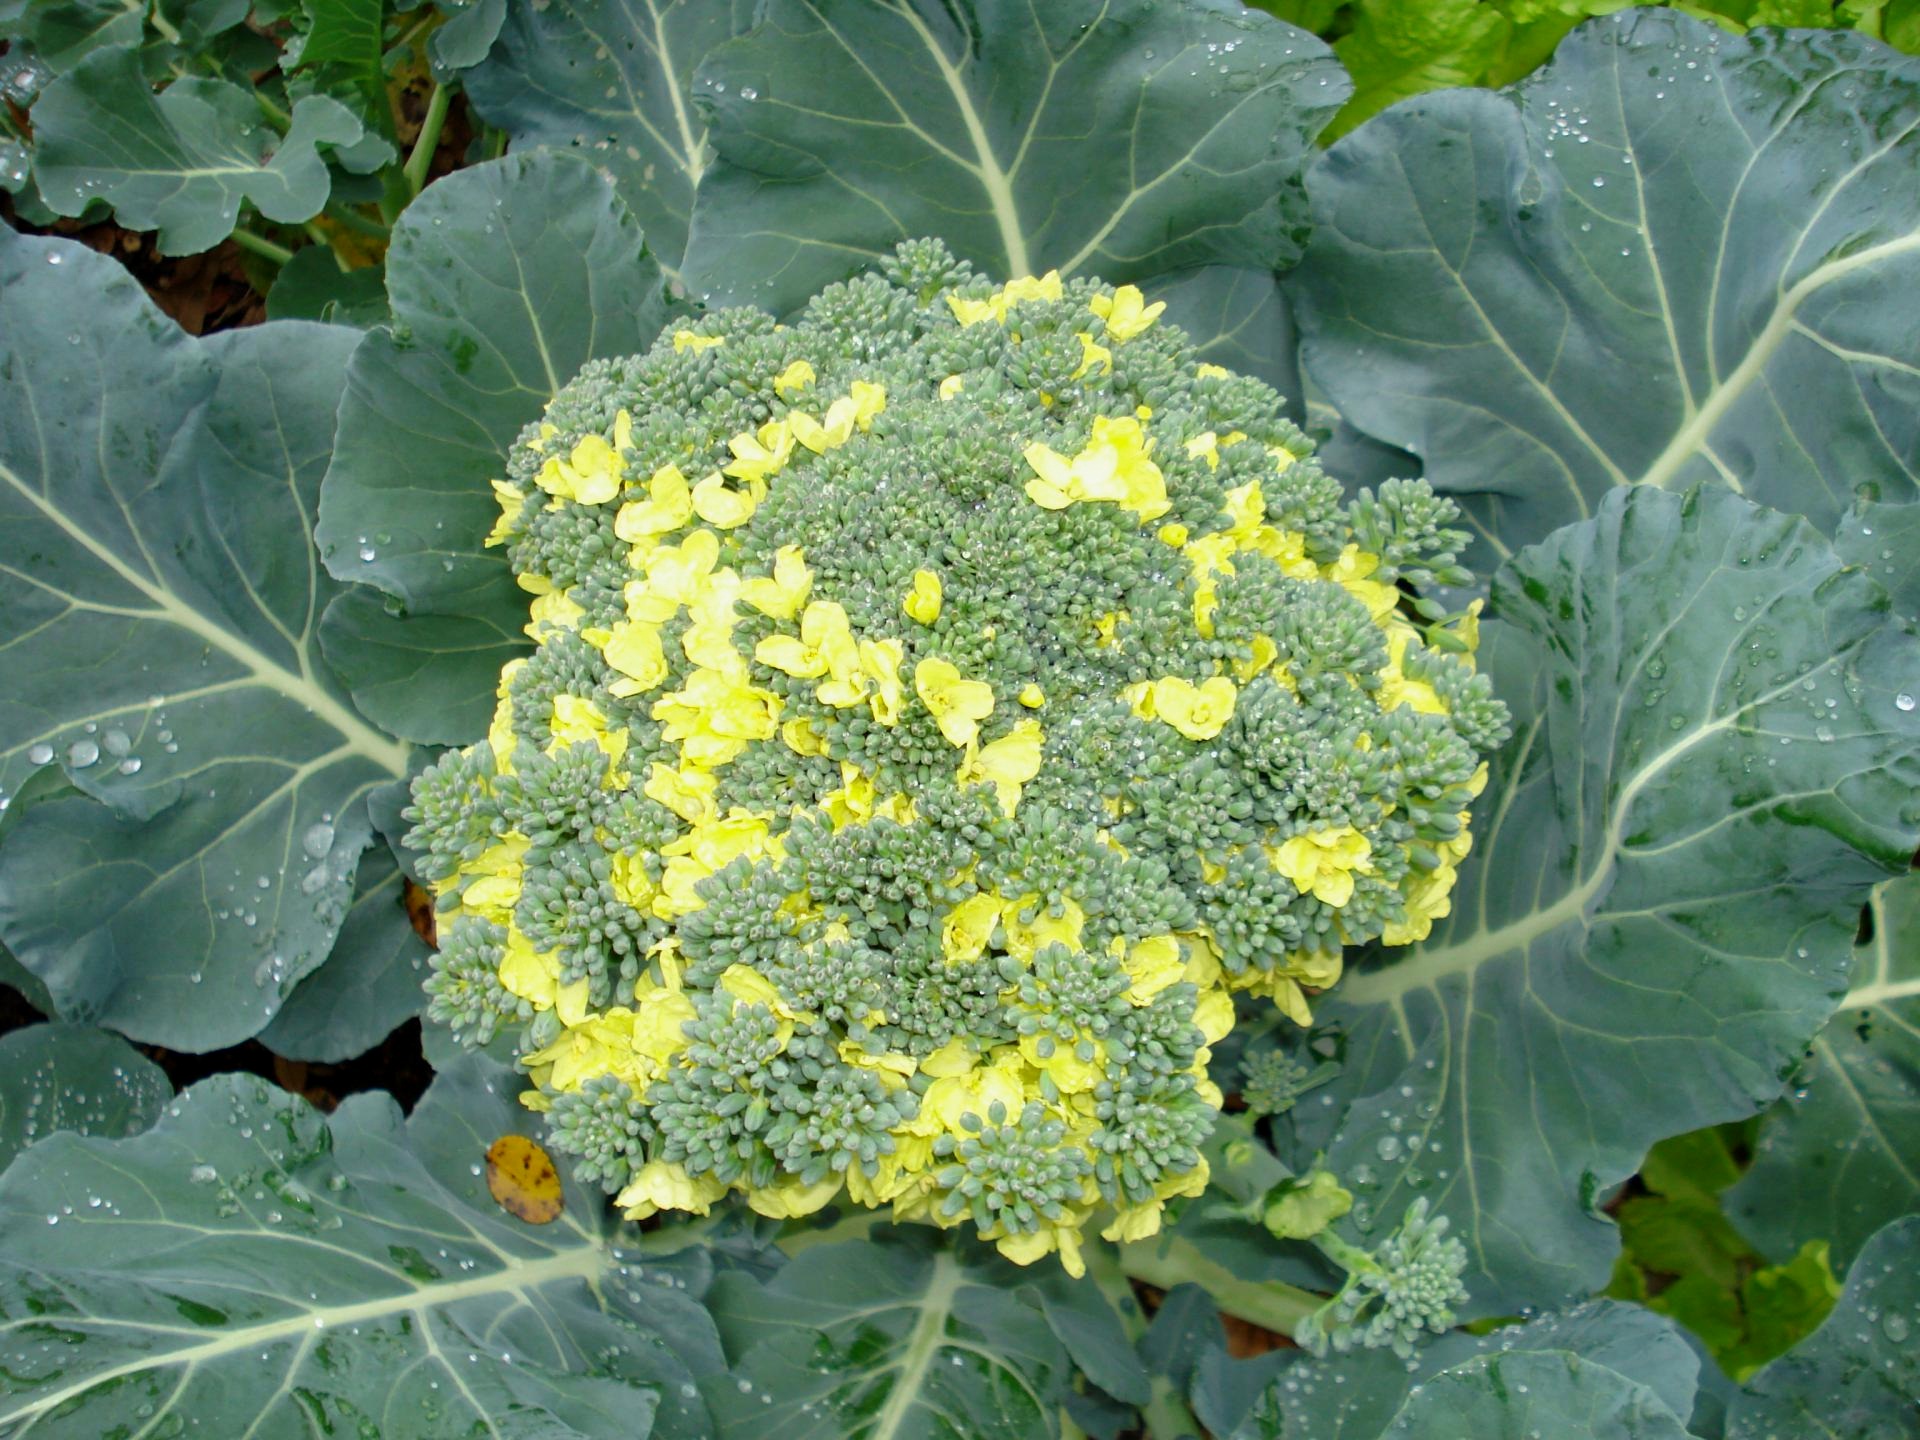 Piantine di broccoli in crescita: come evitare problemi comuni